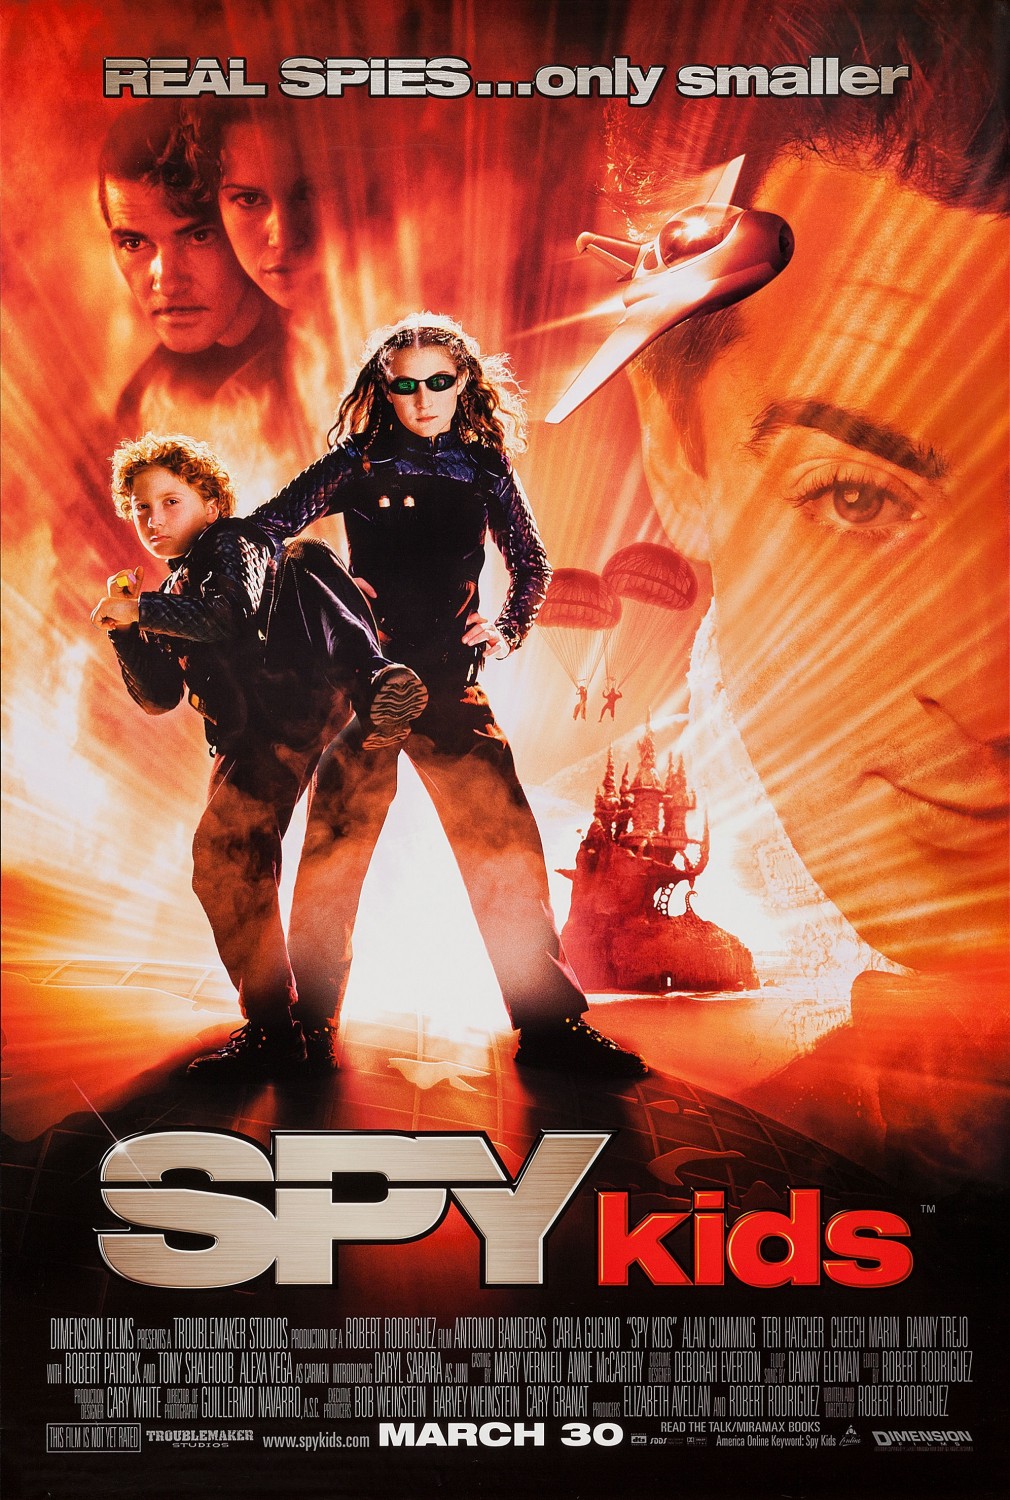 kids movie poster design